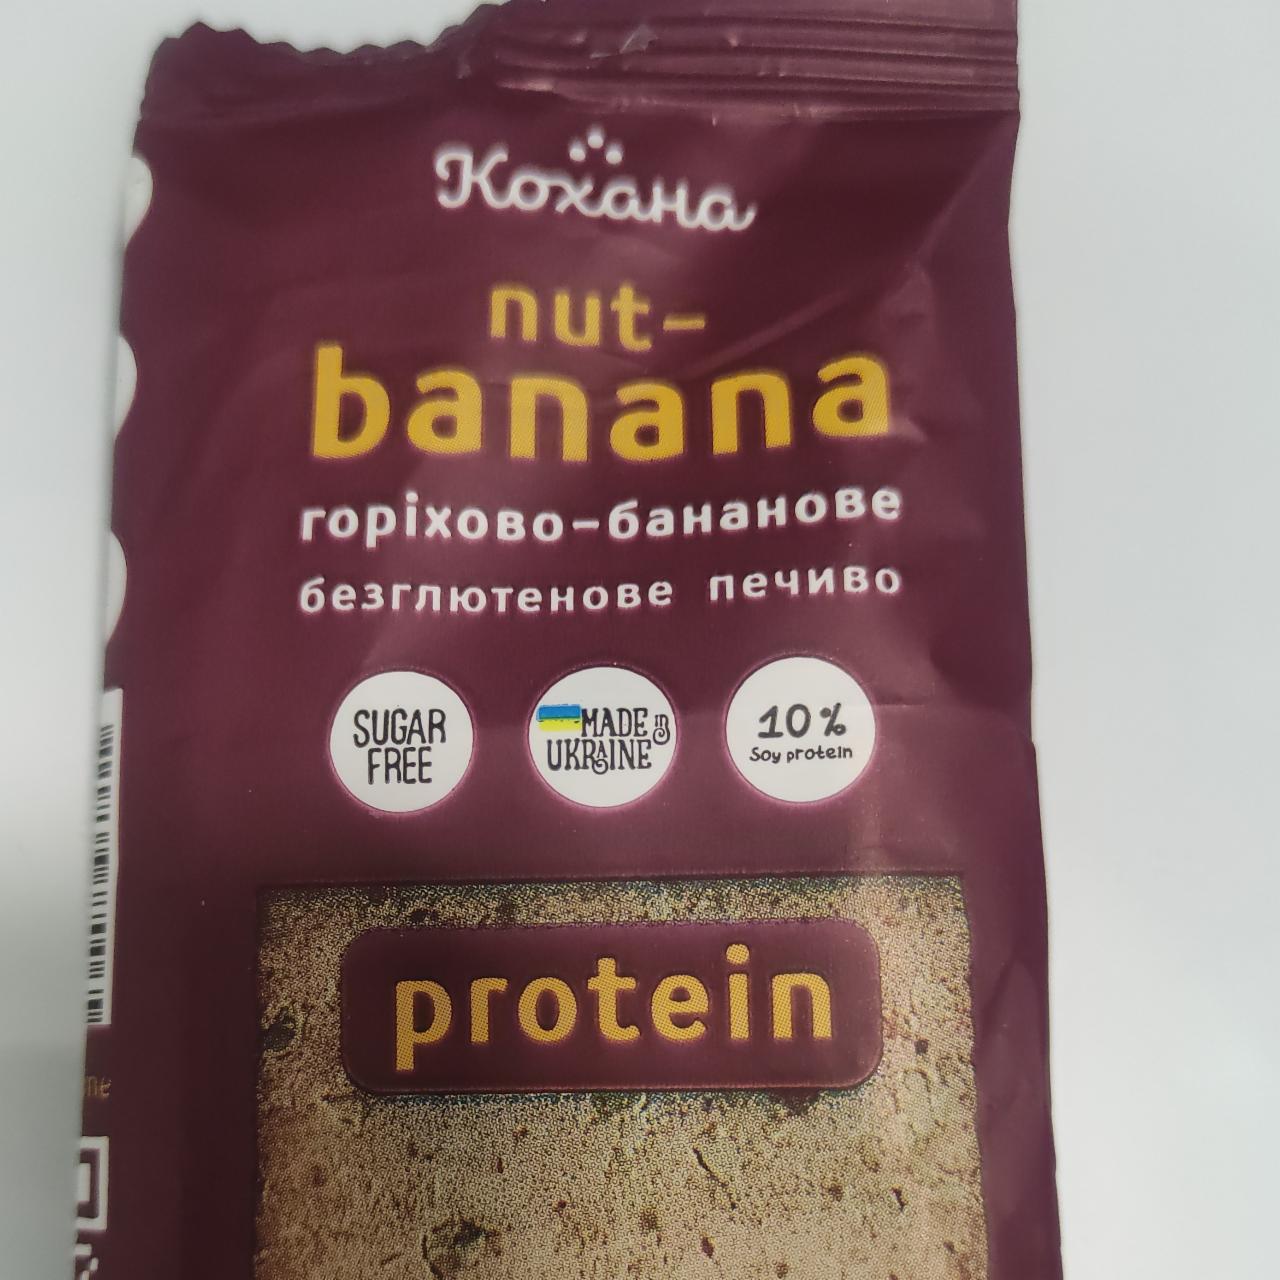 Фото - Печенье орехово-банановое безглютеновое Nut-Banana Кохана